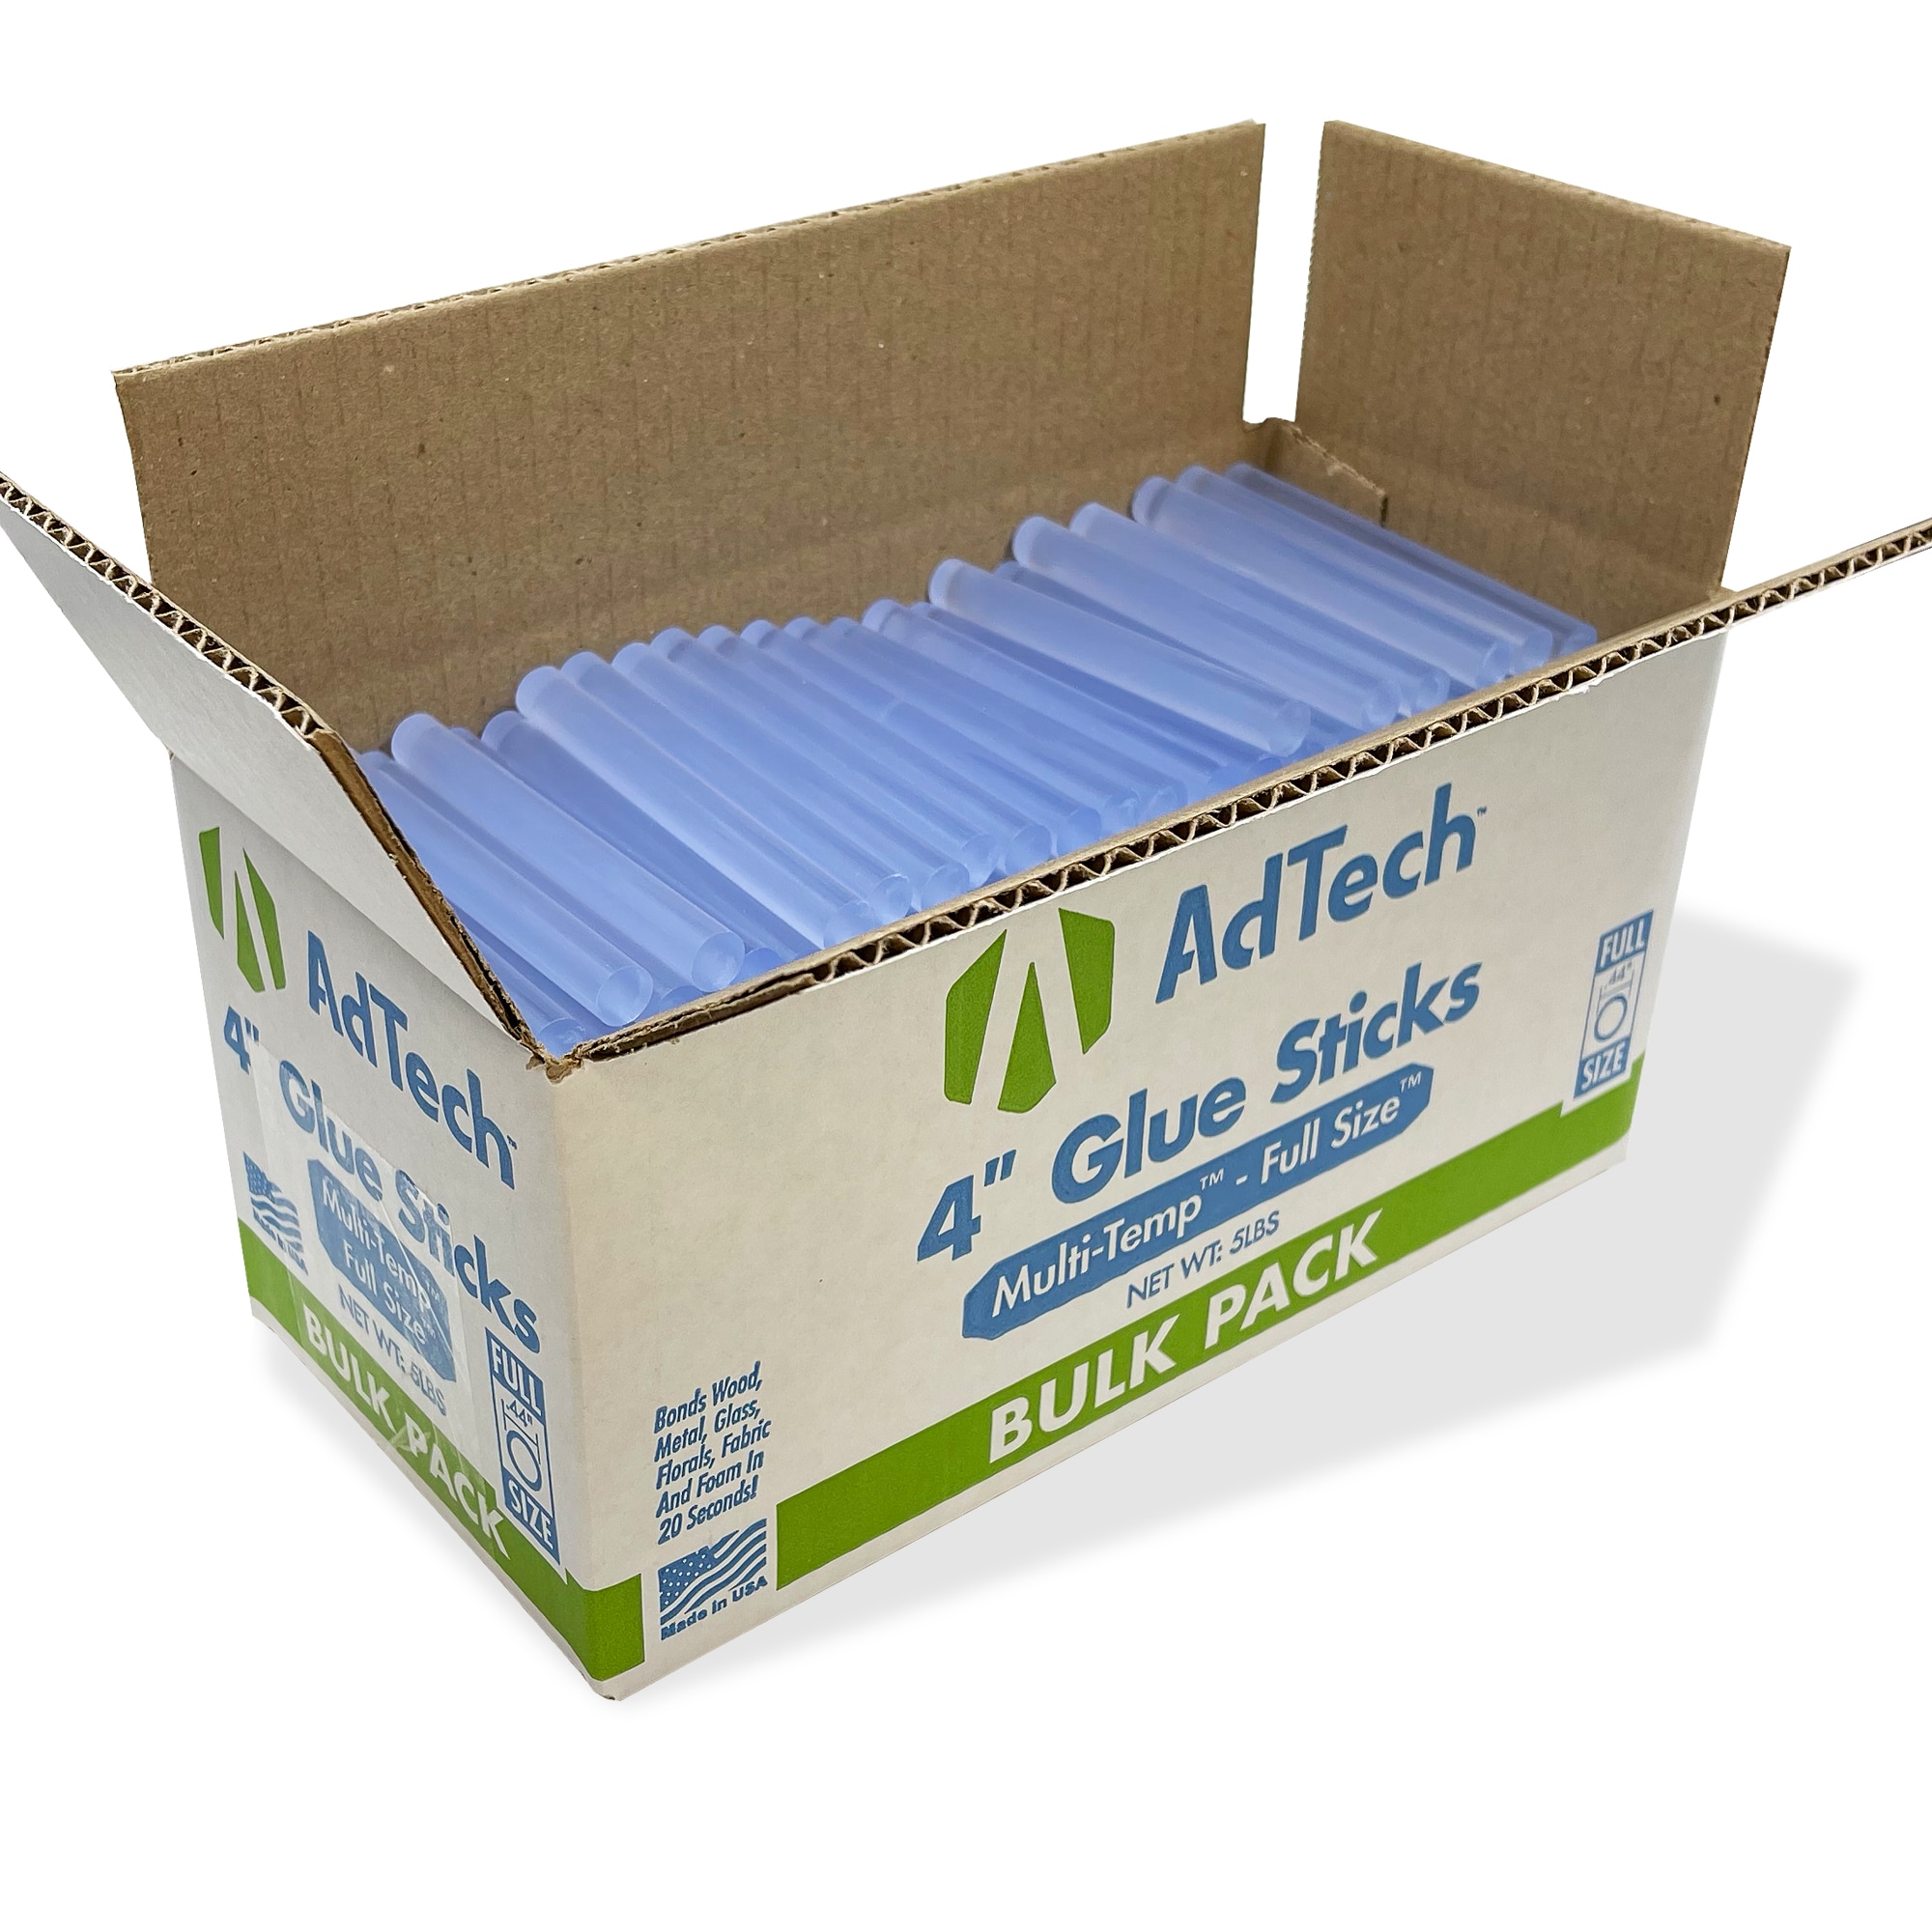 Adtech 220-145-5 4 Full Size Hot Glue Sticks, 4 inch, Clear